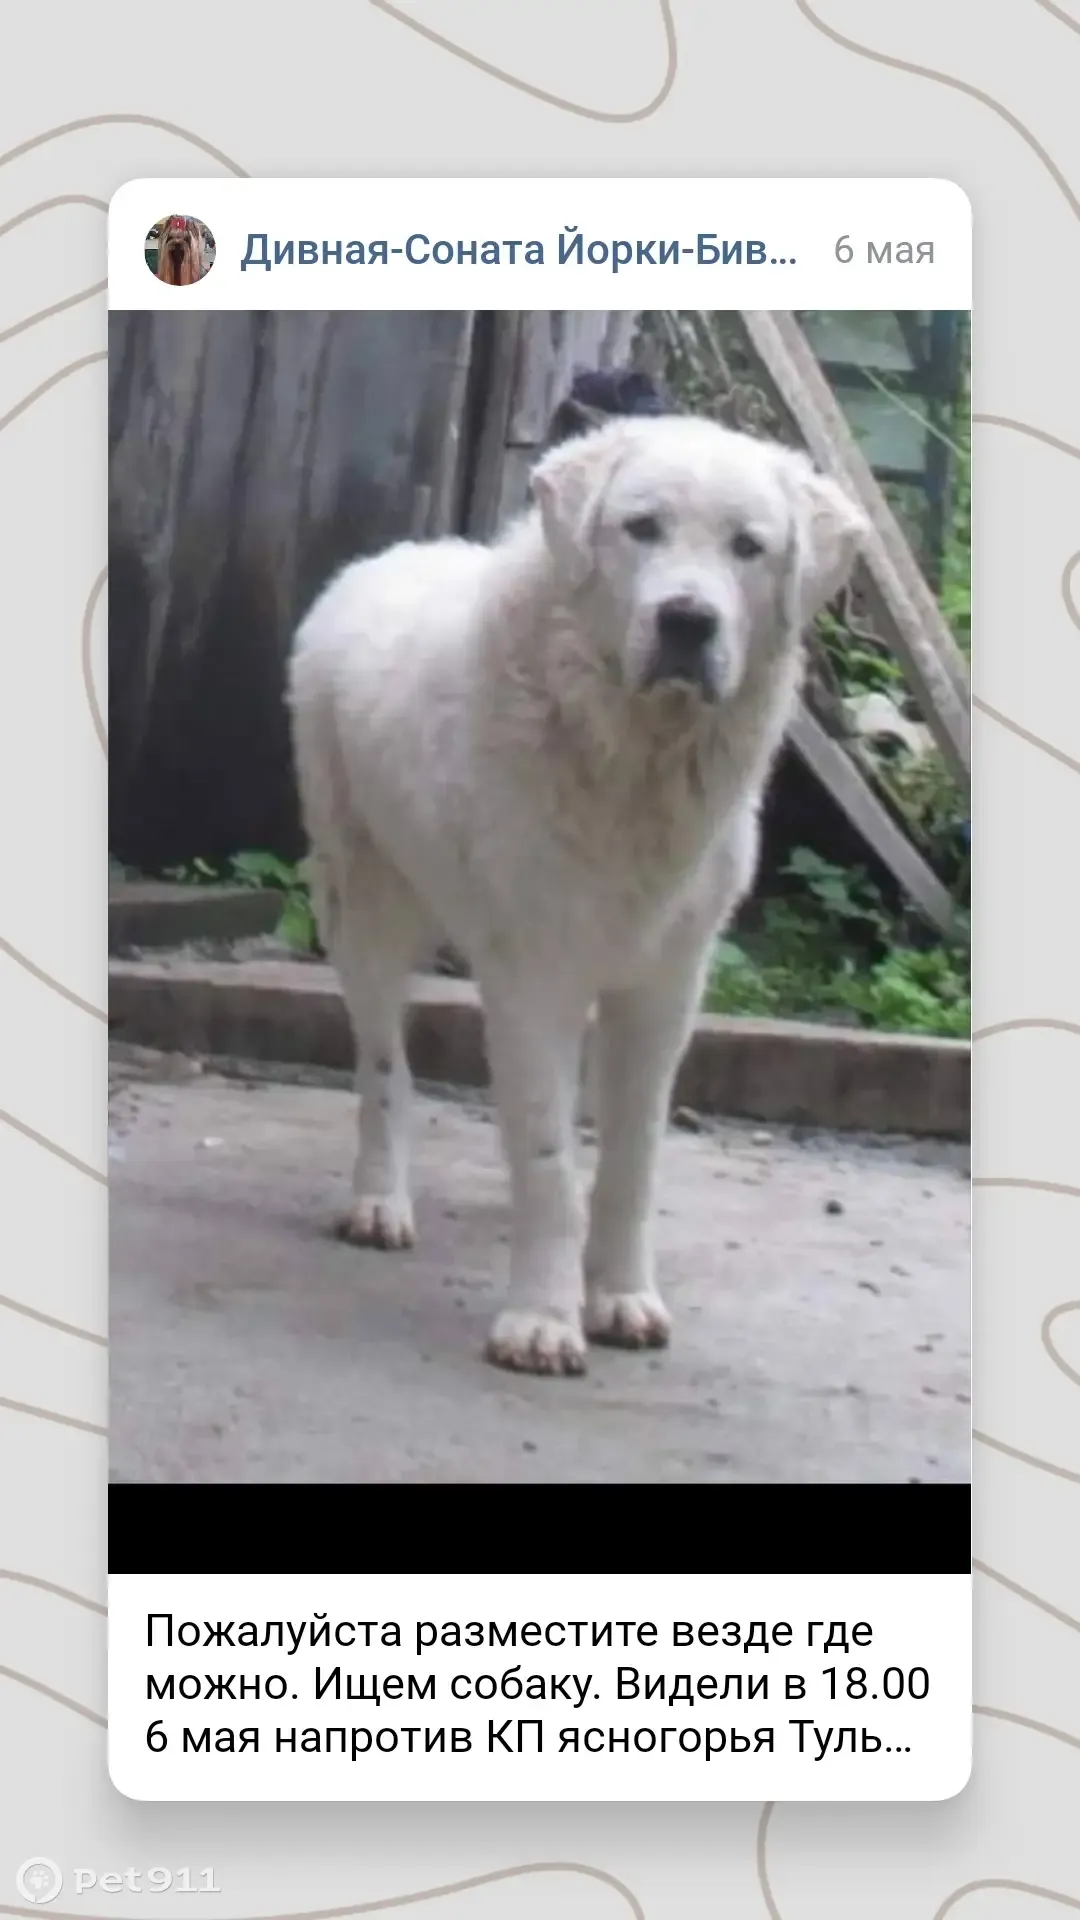 Пропала собака в Тульской области, помогите найти! - photo